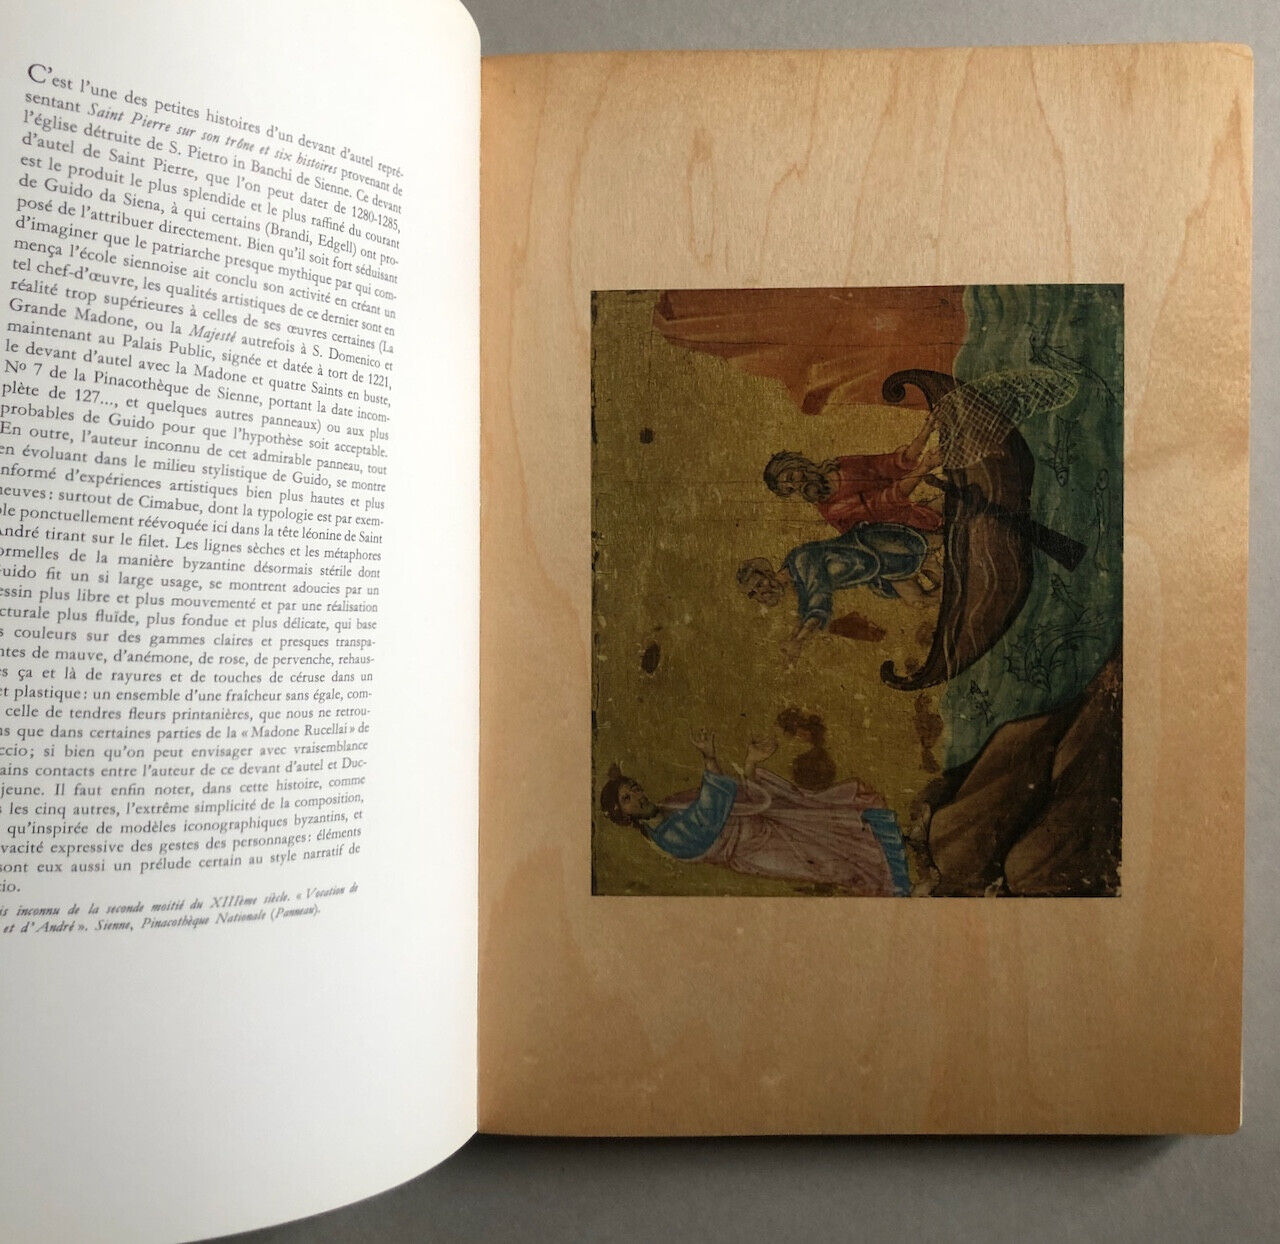 Enzo Carli — Peinture siennoise — lithographies sur bois — Beatrice d'Este  1962